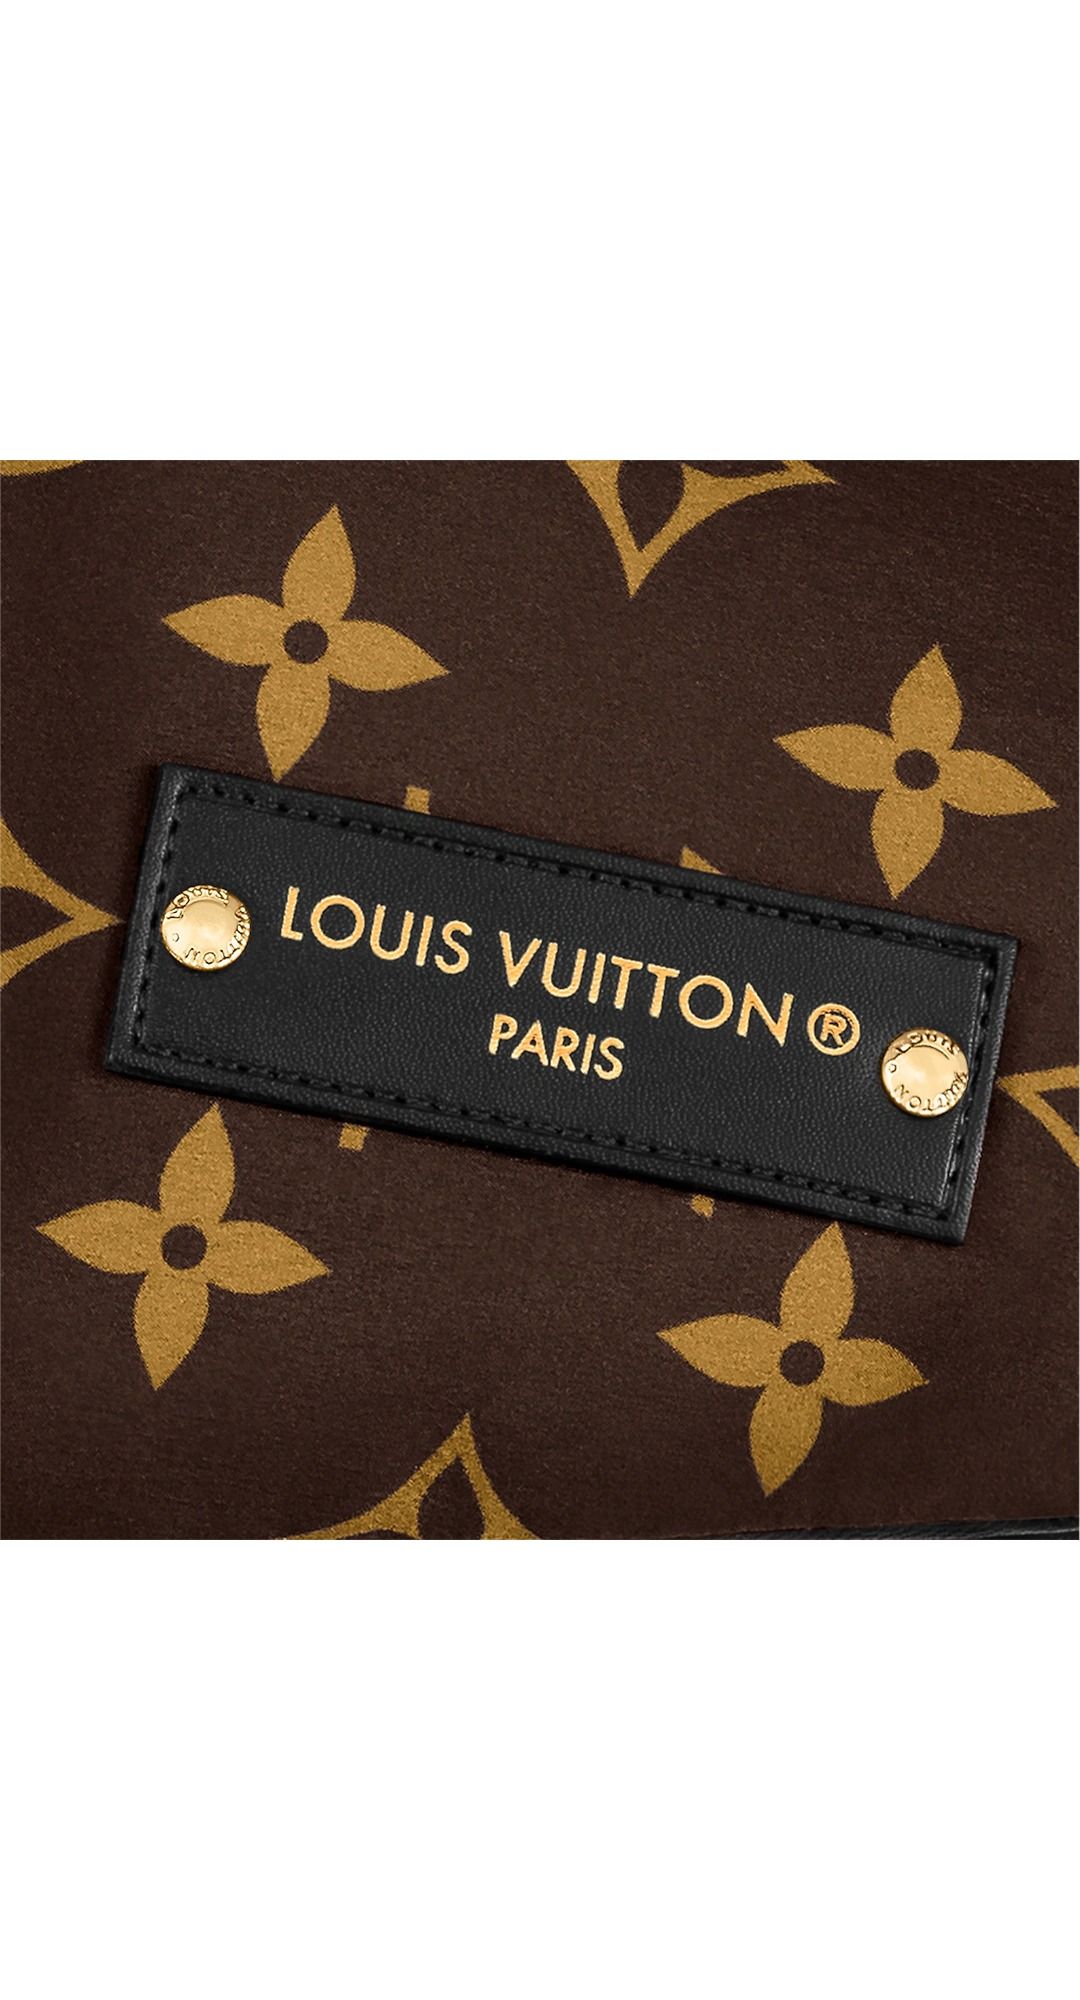 Louis Vuitton, Shoes, Nwt Louis Vuitton Pool Pillow Flat Comfort Mule